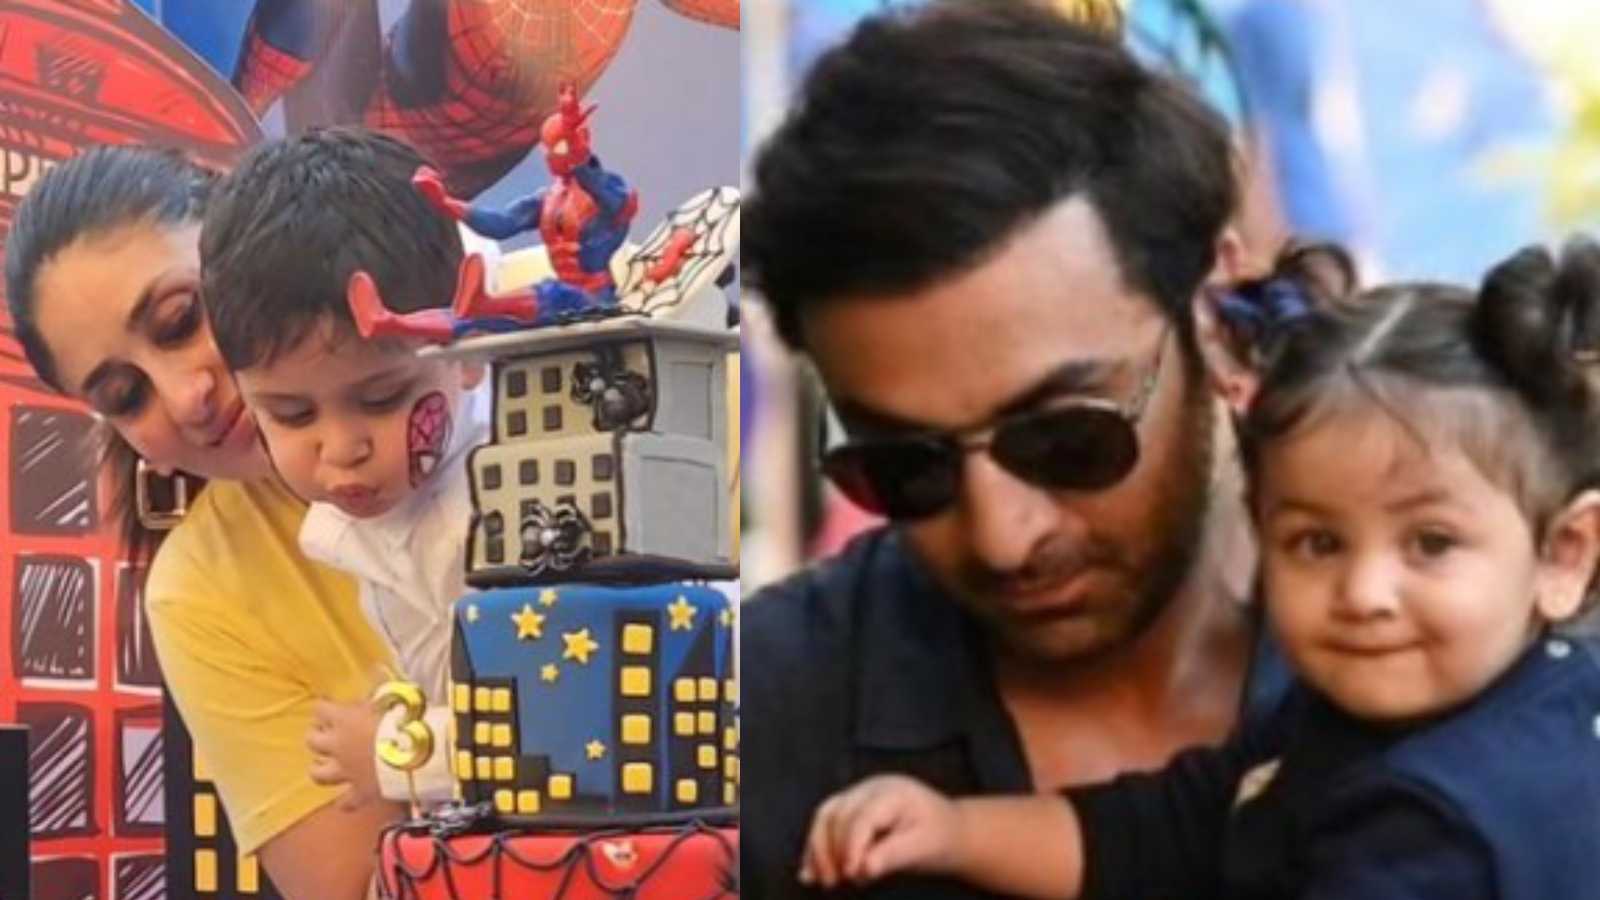 Kareena Kapoor Khan and Saif Ali Khan bring Spiderman-themed cake for Jeh, Ranbir twins with Raha; see pics